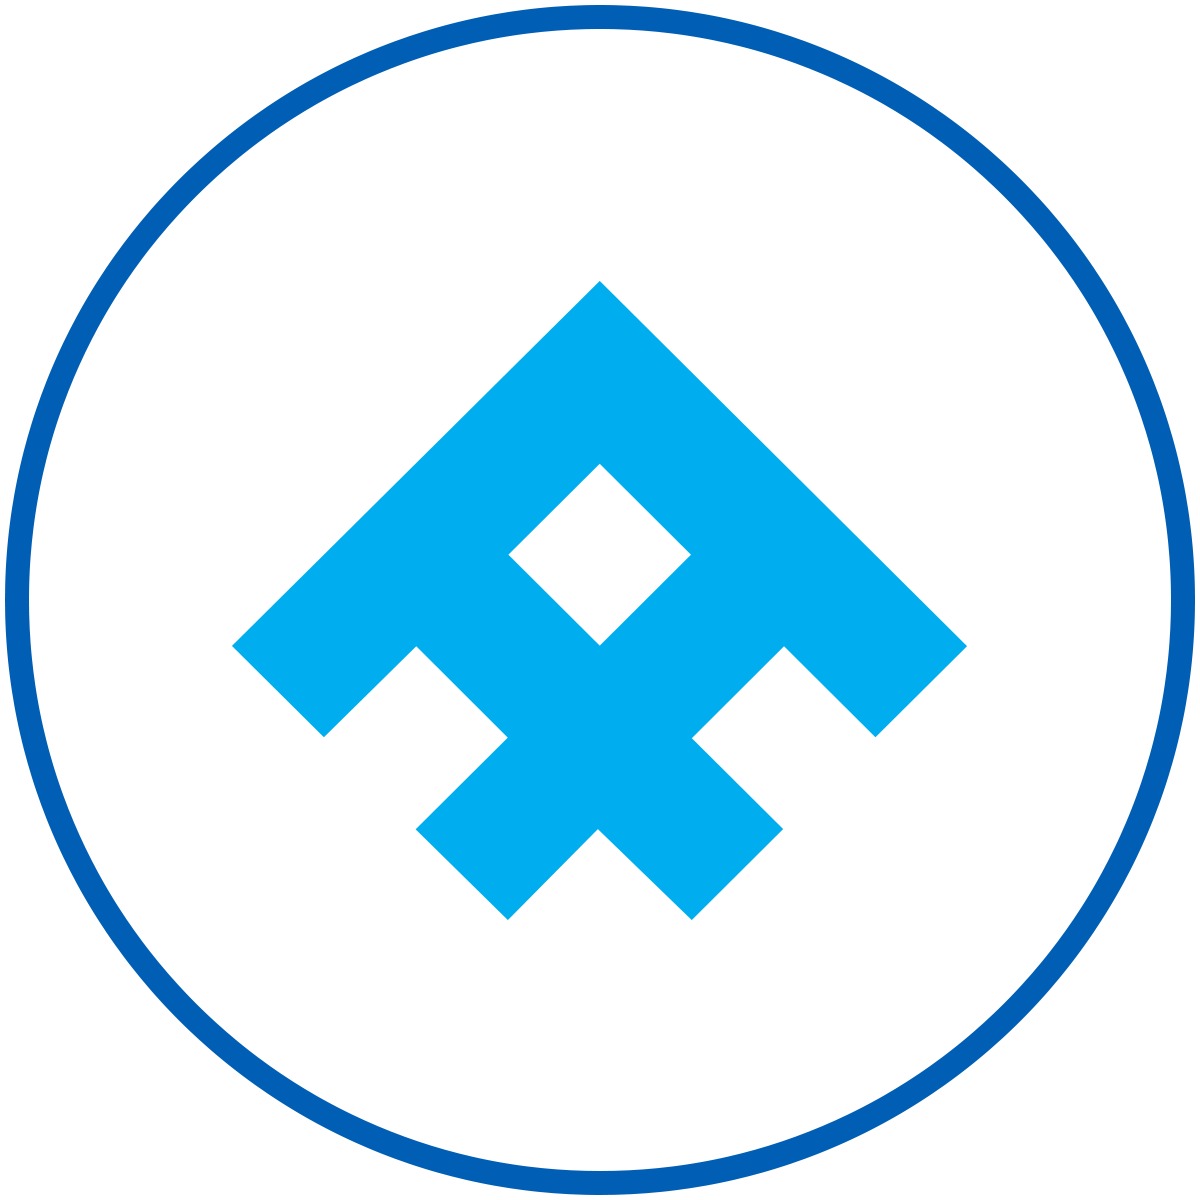 Al-Futtaim - logo